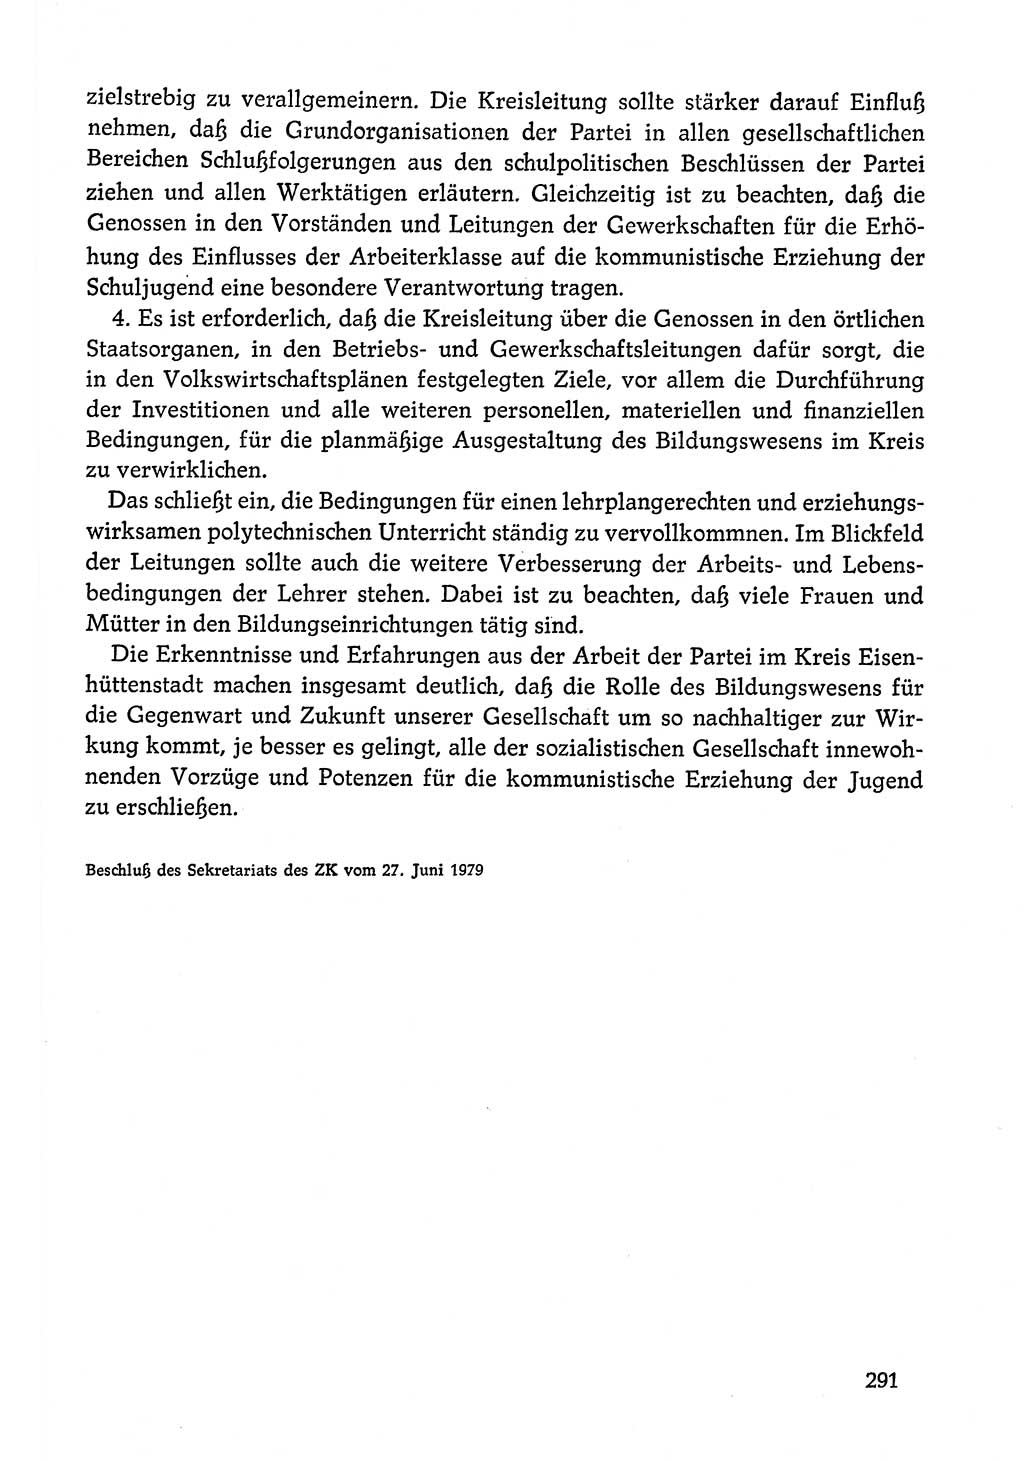 Dokumente der Sozialistischen Einheitspartei Deutschlands (SED) [Deutsche Demokratische Republik (DDR)] 1978-1979, Seite 291 (Dok. SED DDR 1978-1979, S. 291)